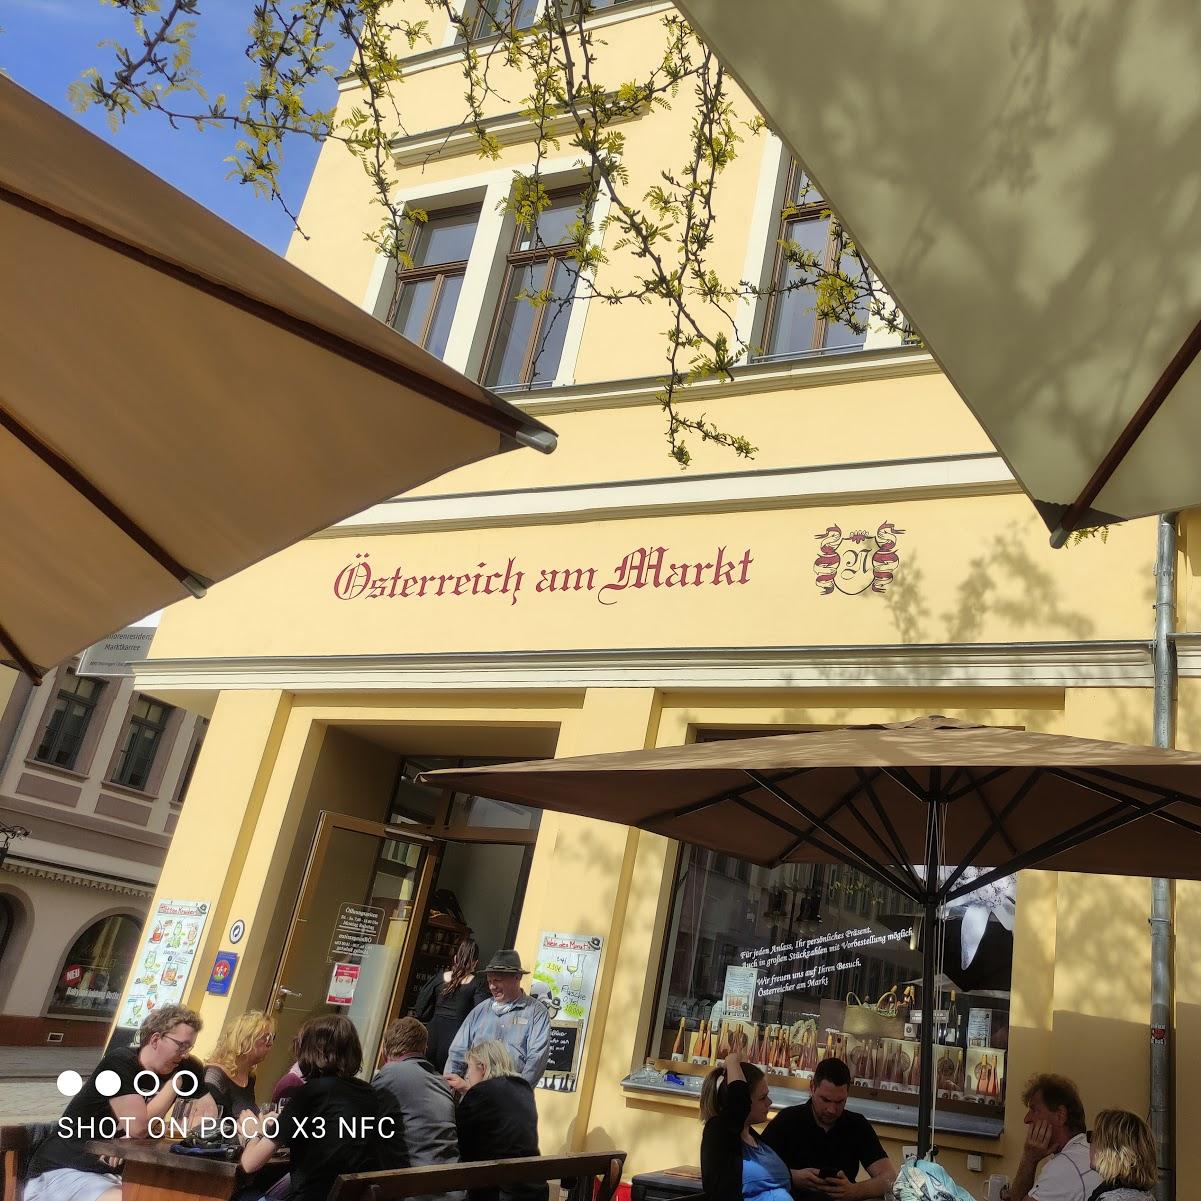 Restaurant "Österreich am Markt" in Gera